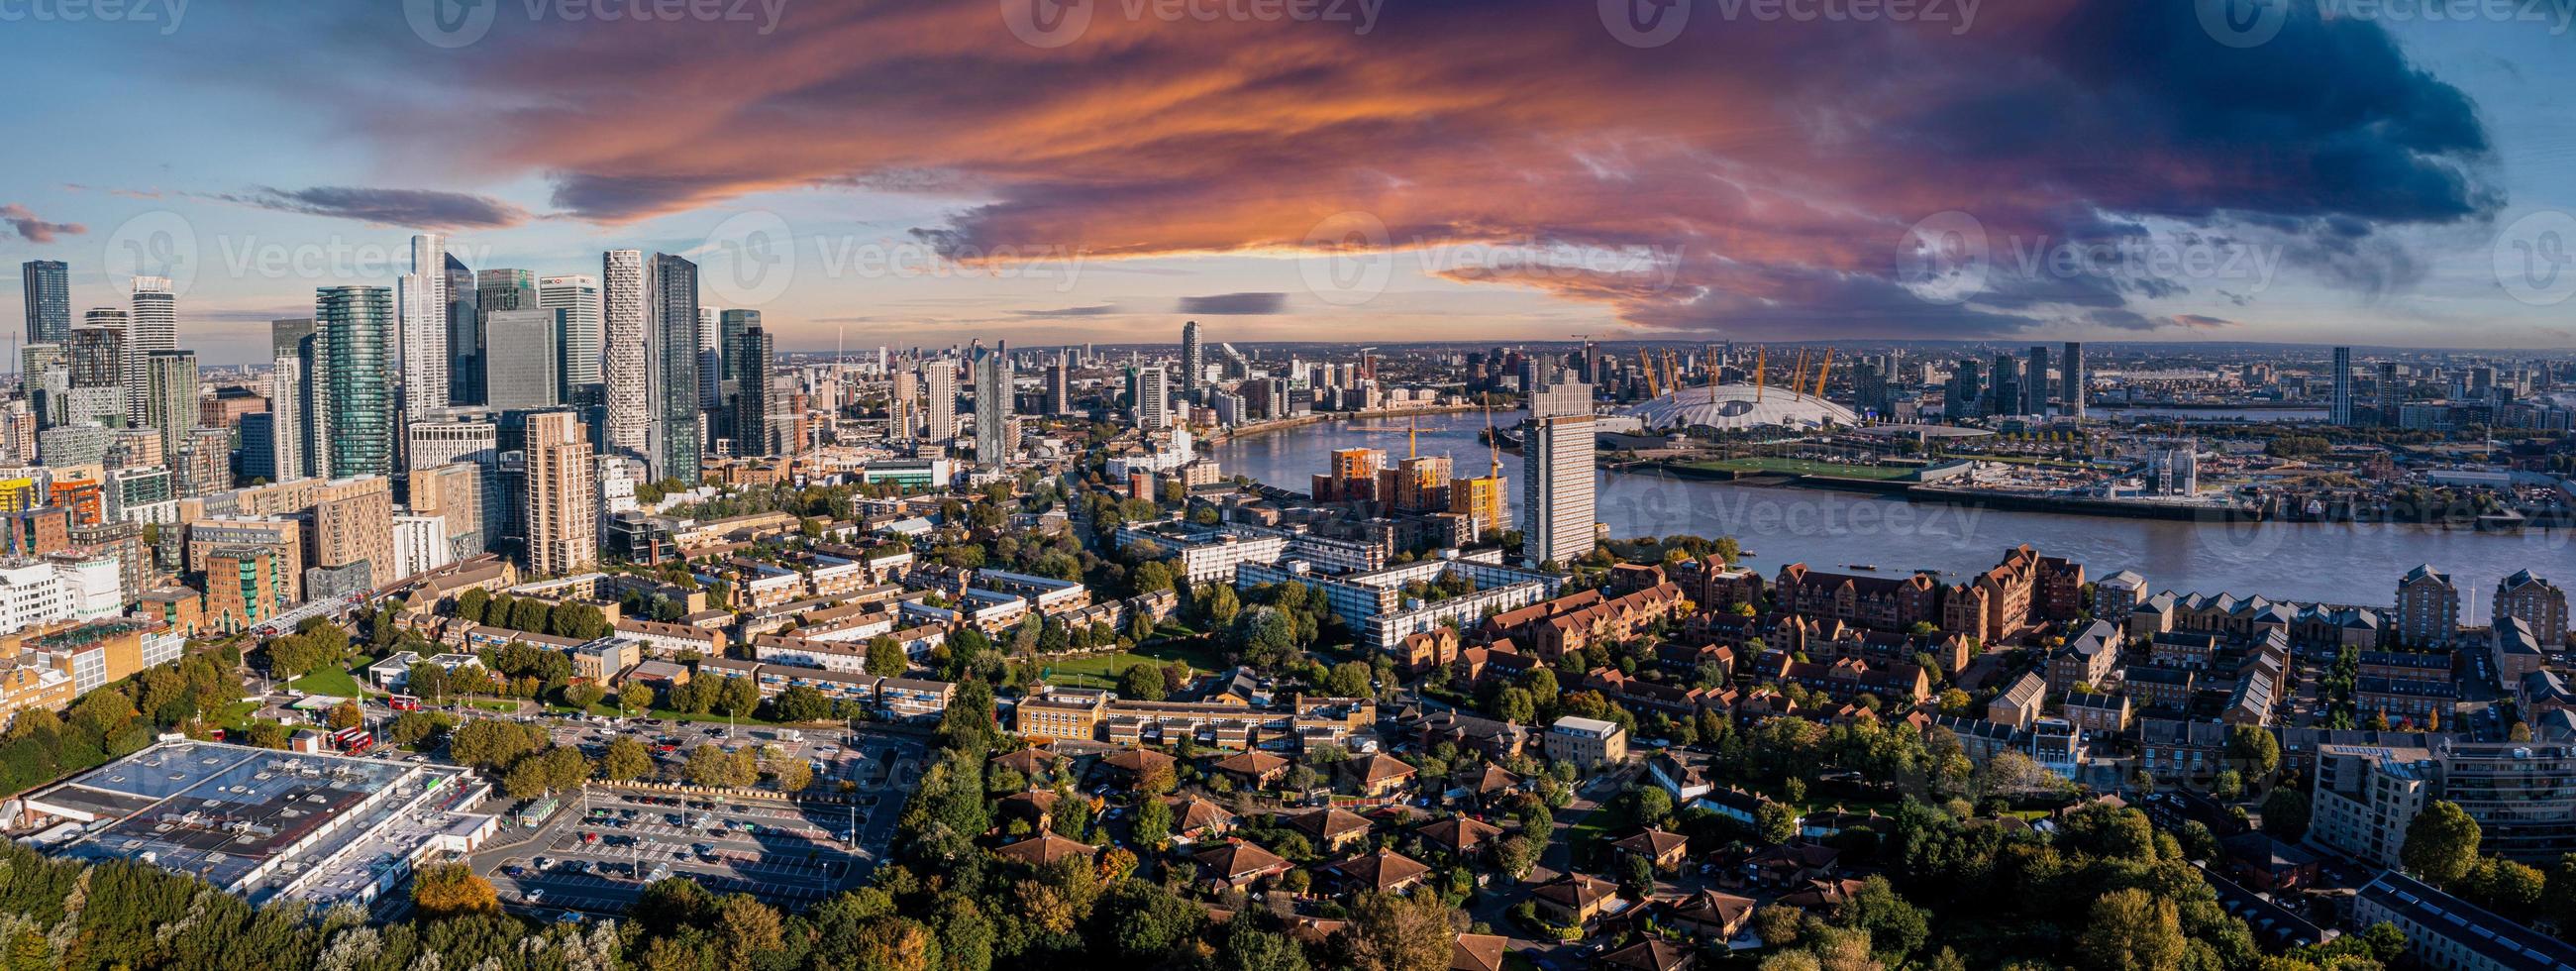 Vista panoramica aerea del quartiere degli affari di Canary Wharf a Londra, Regno Unito. foto